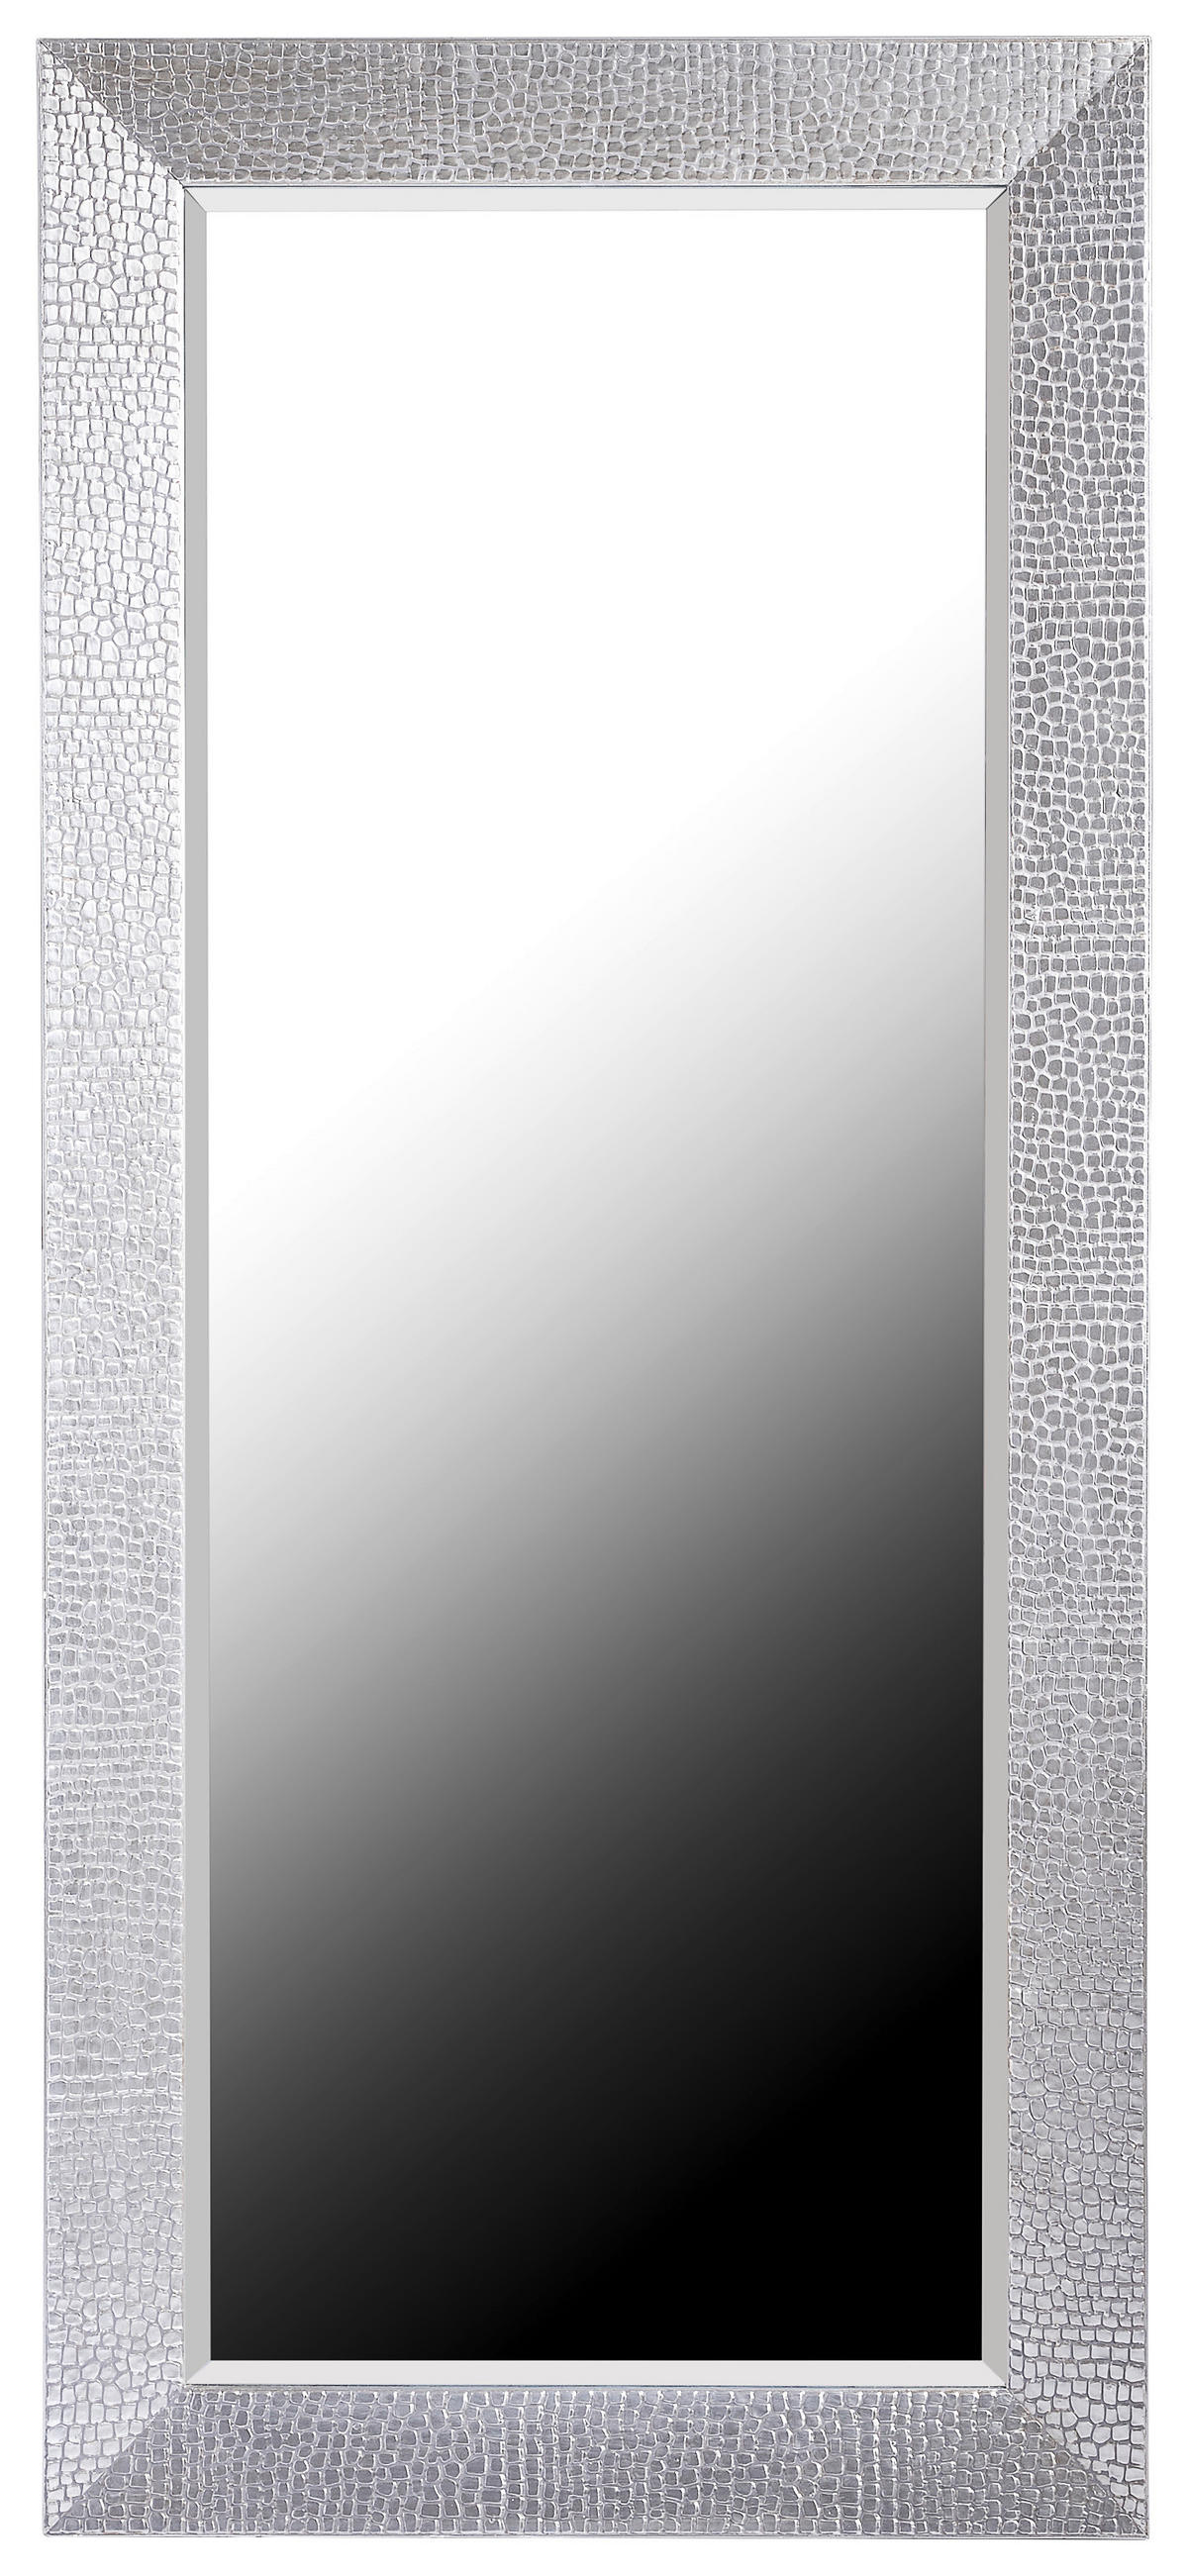 Siddharta Spiegel groß Aluminium graphit rund D89 cm Spiegel D46cm